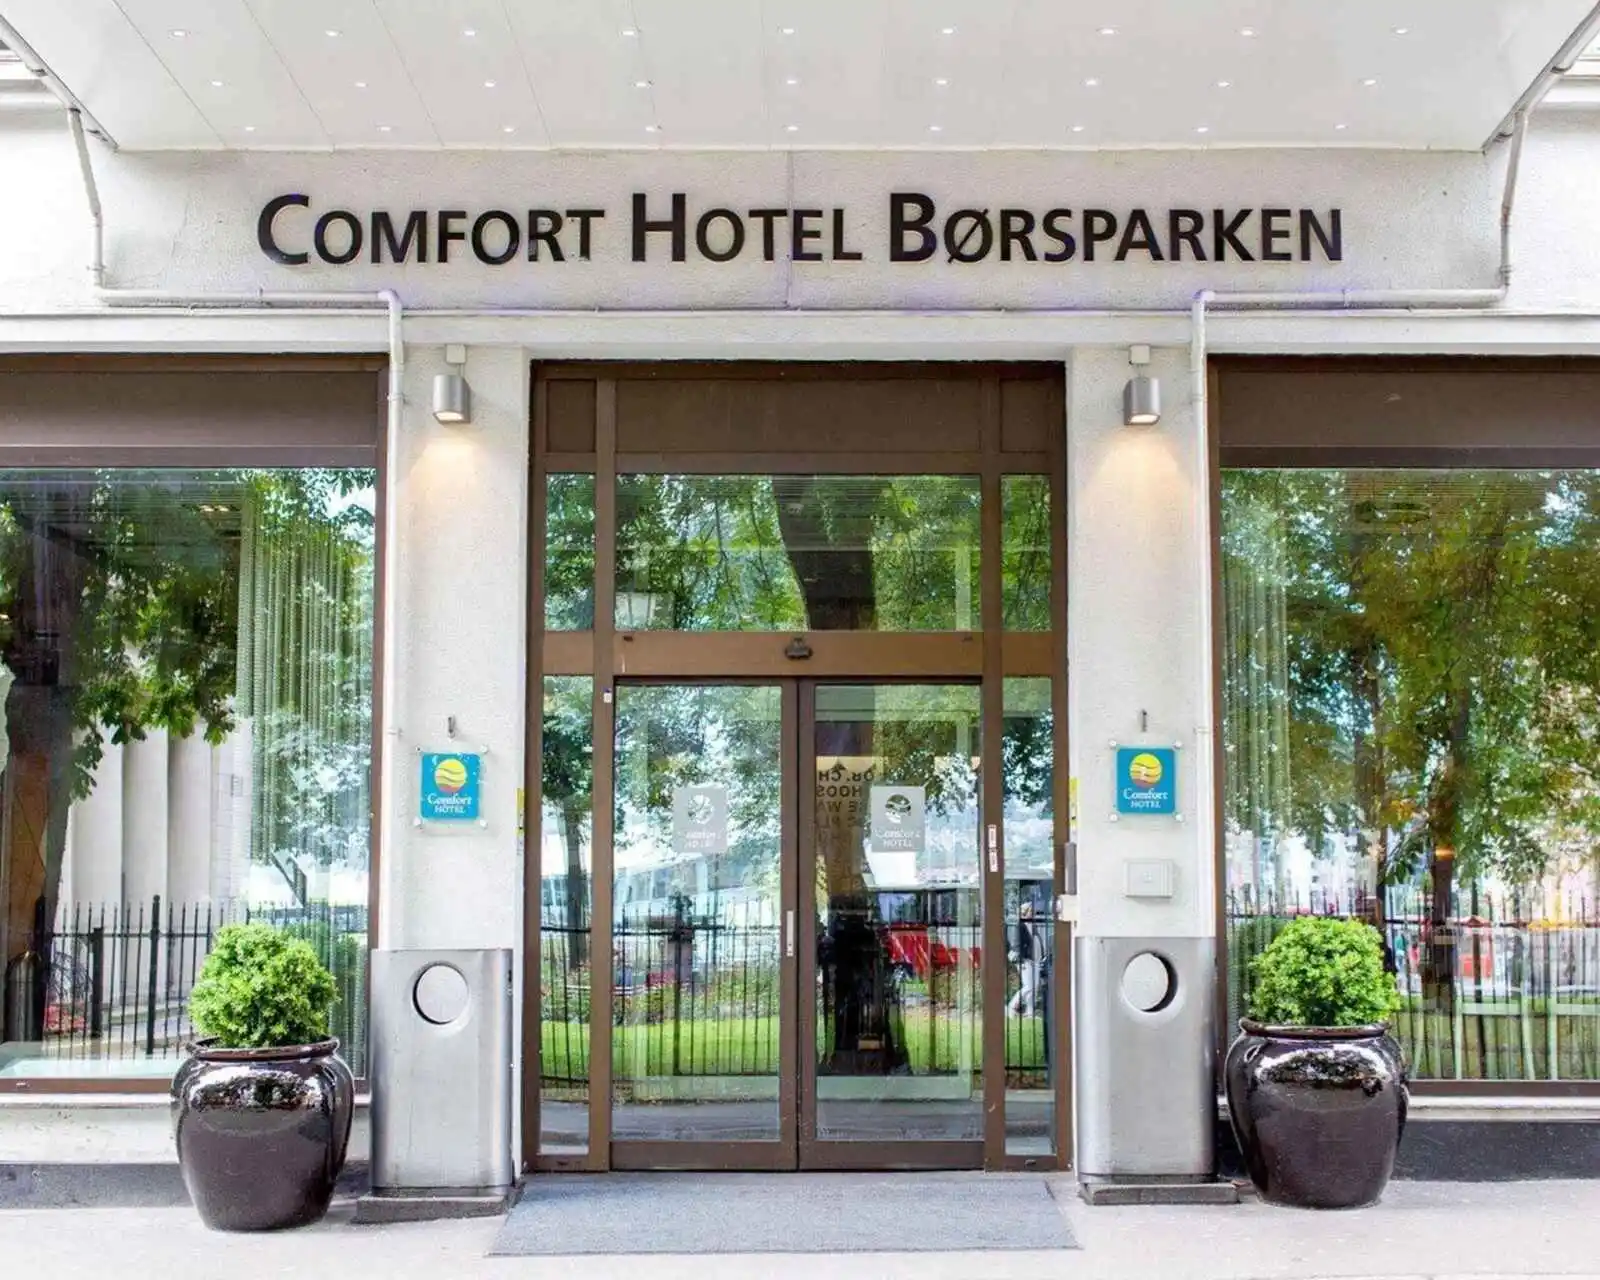 Comfort Hotel Børsparken - 3*